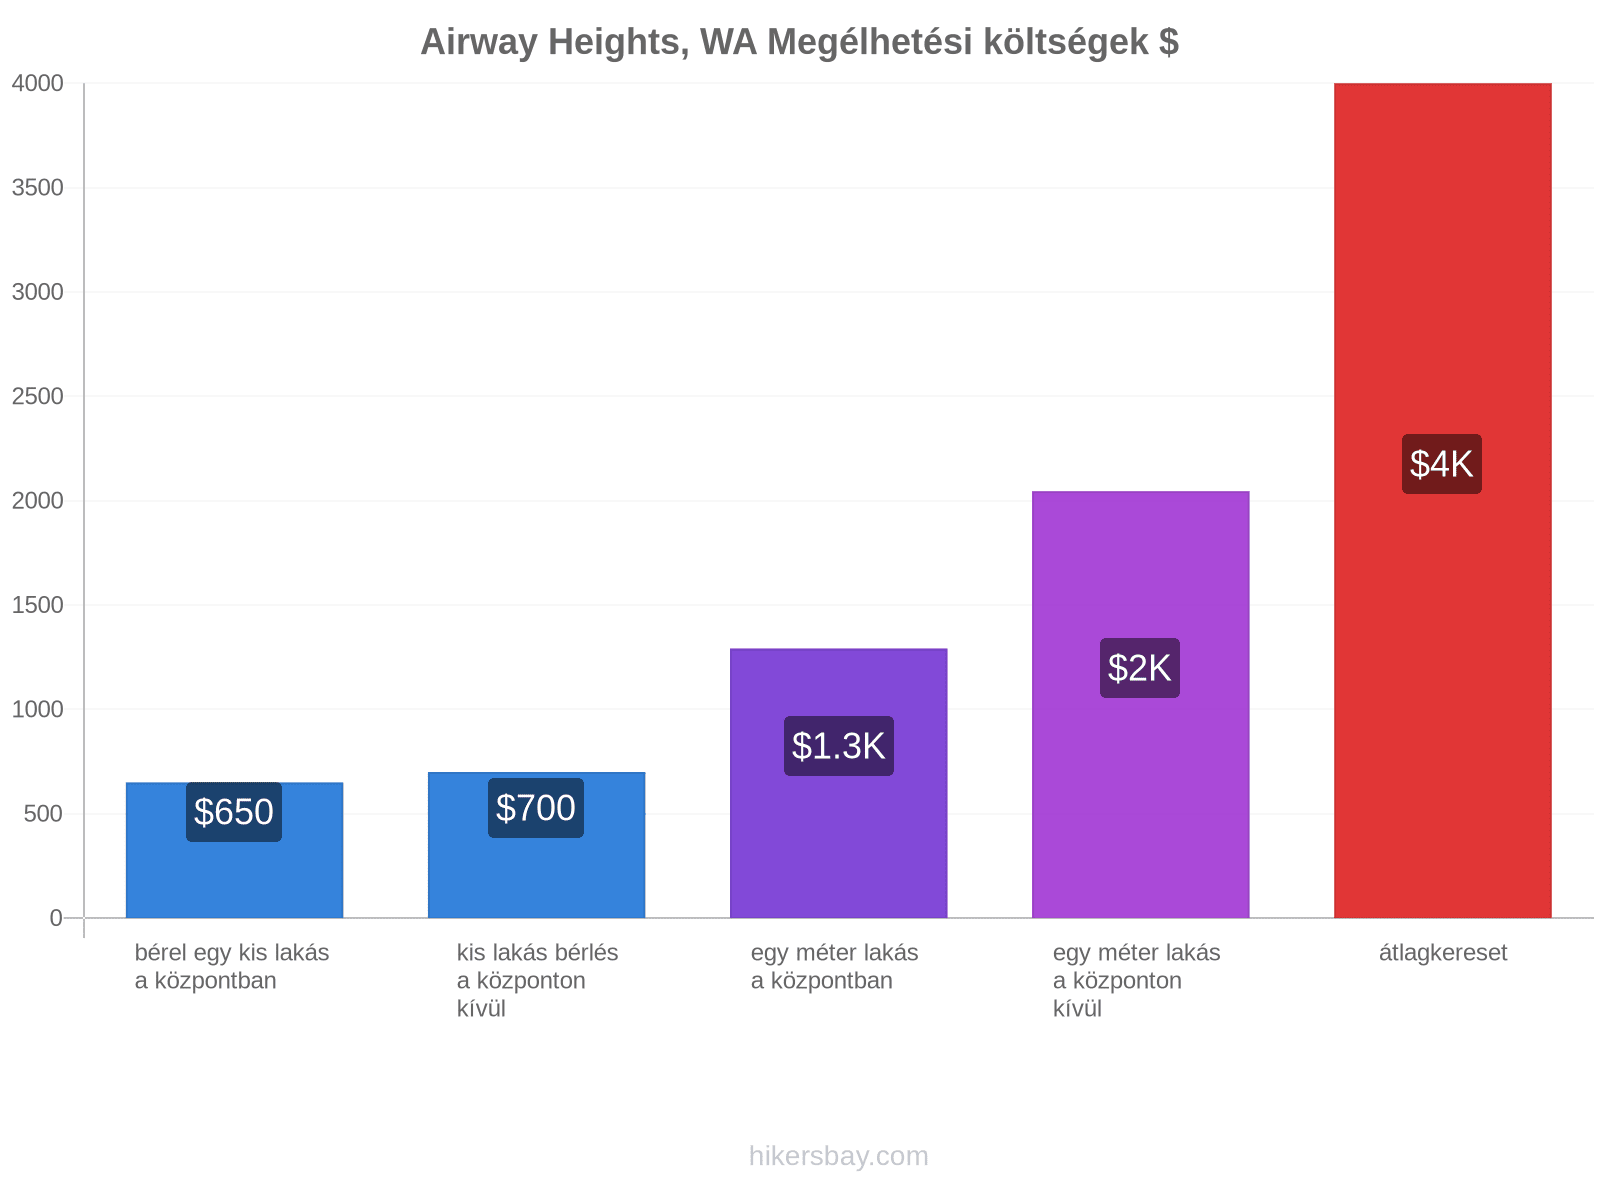 Airway Heights, WA megélhetési költségek hikersbay.com